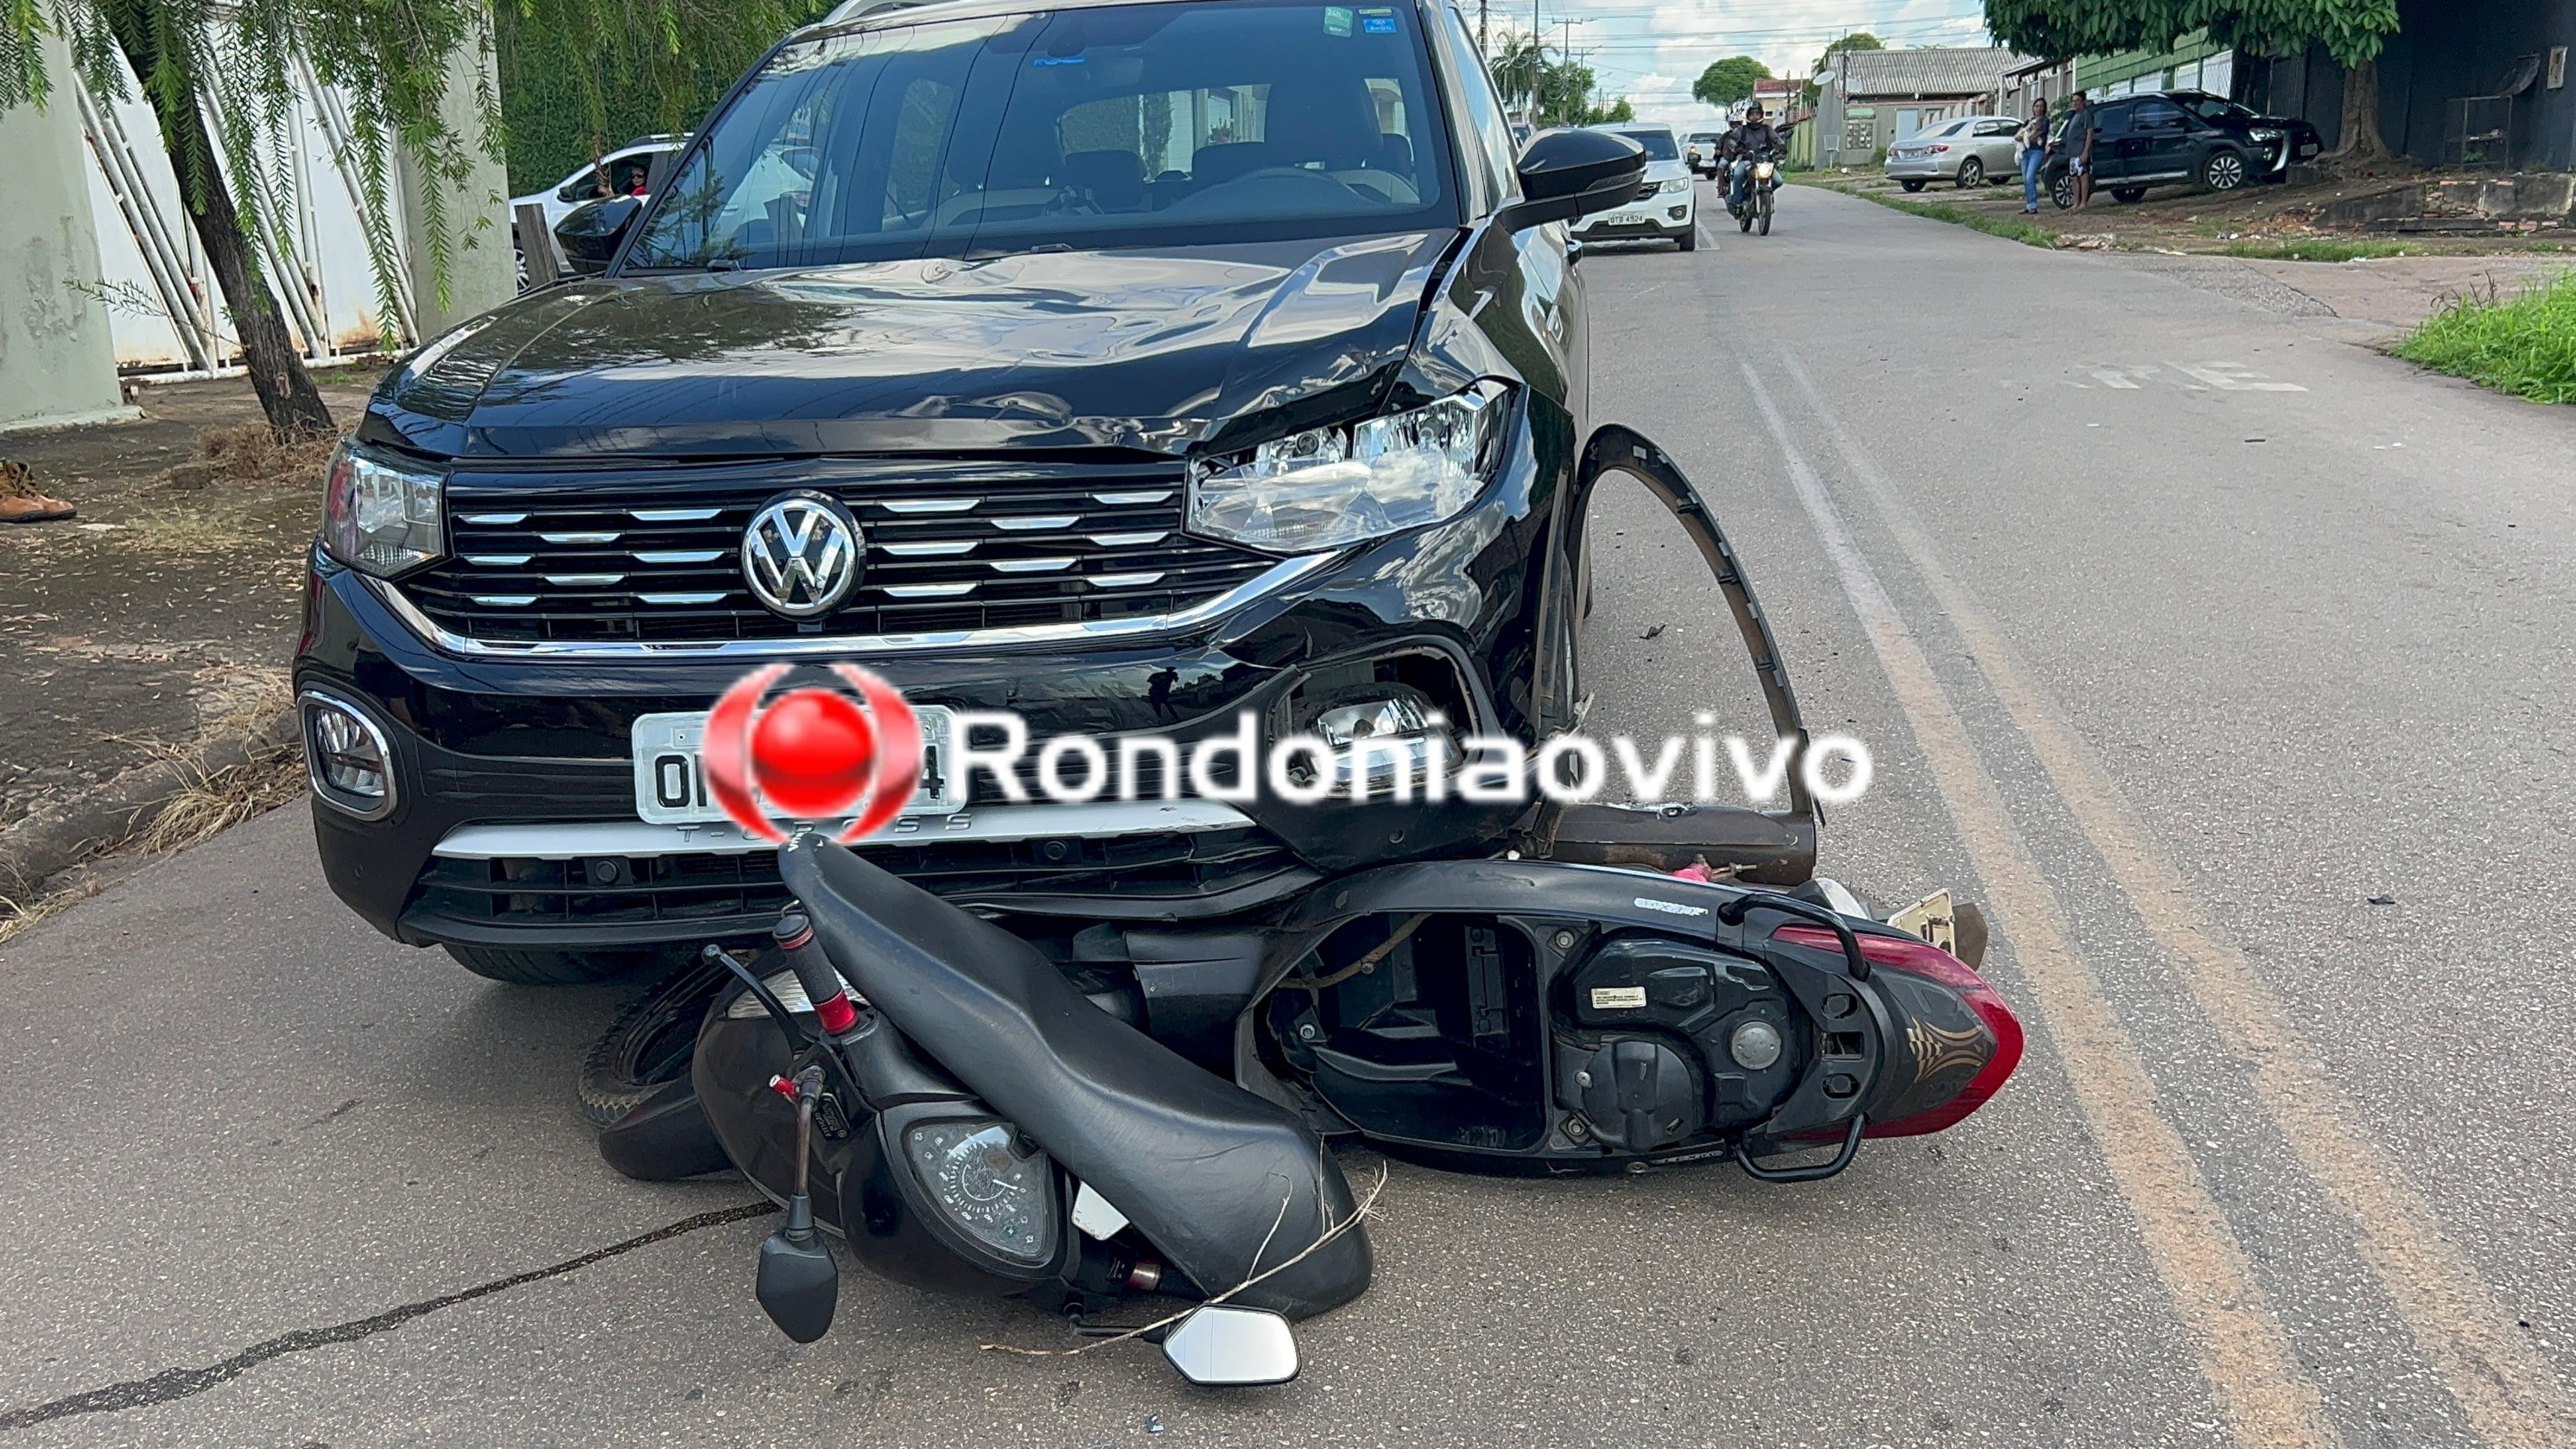 URGENTE: Motociclista é arrastado por carro e fica gravemente ferido 